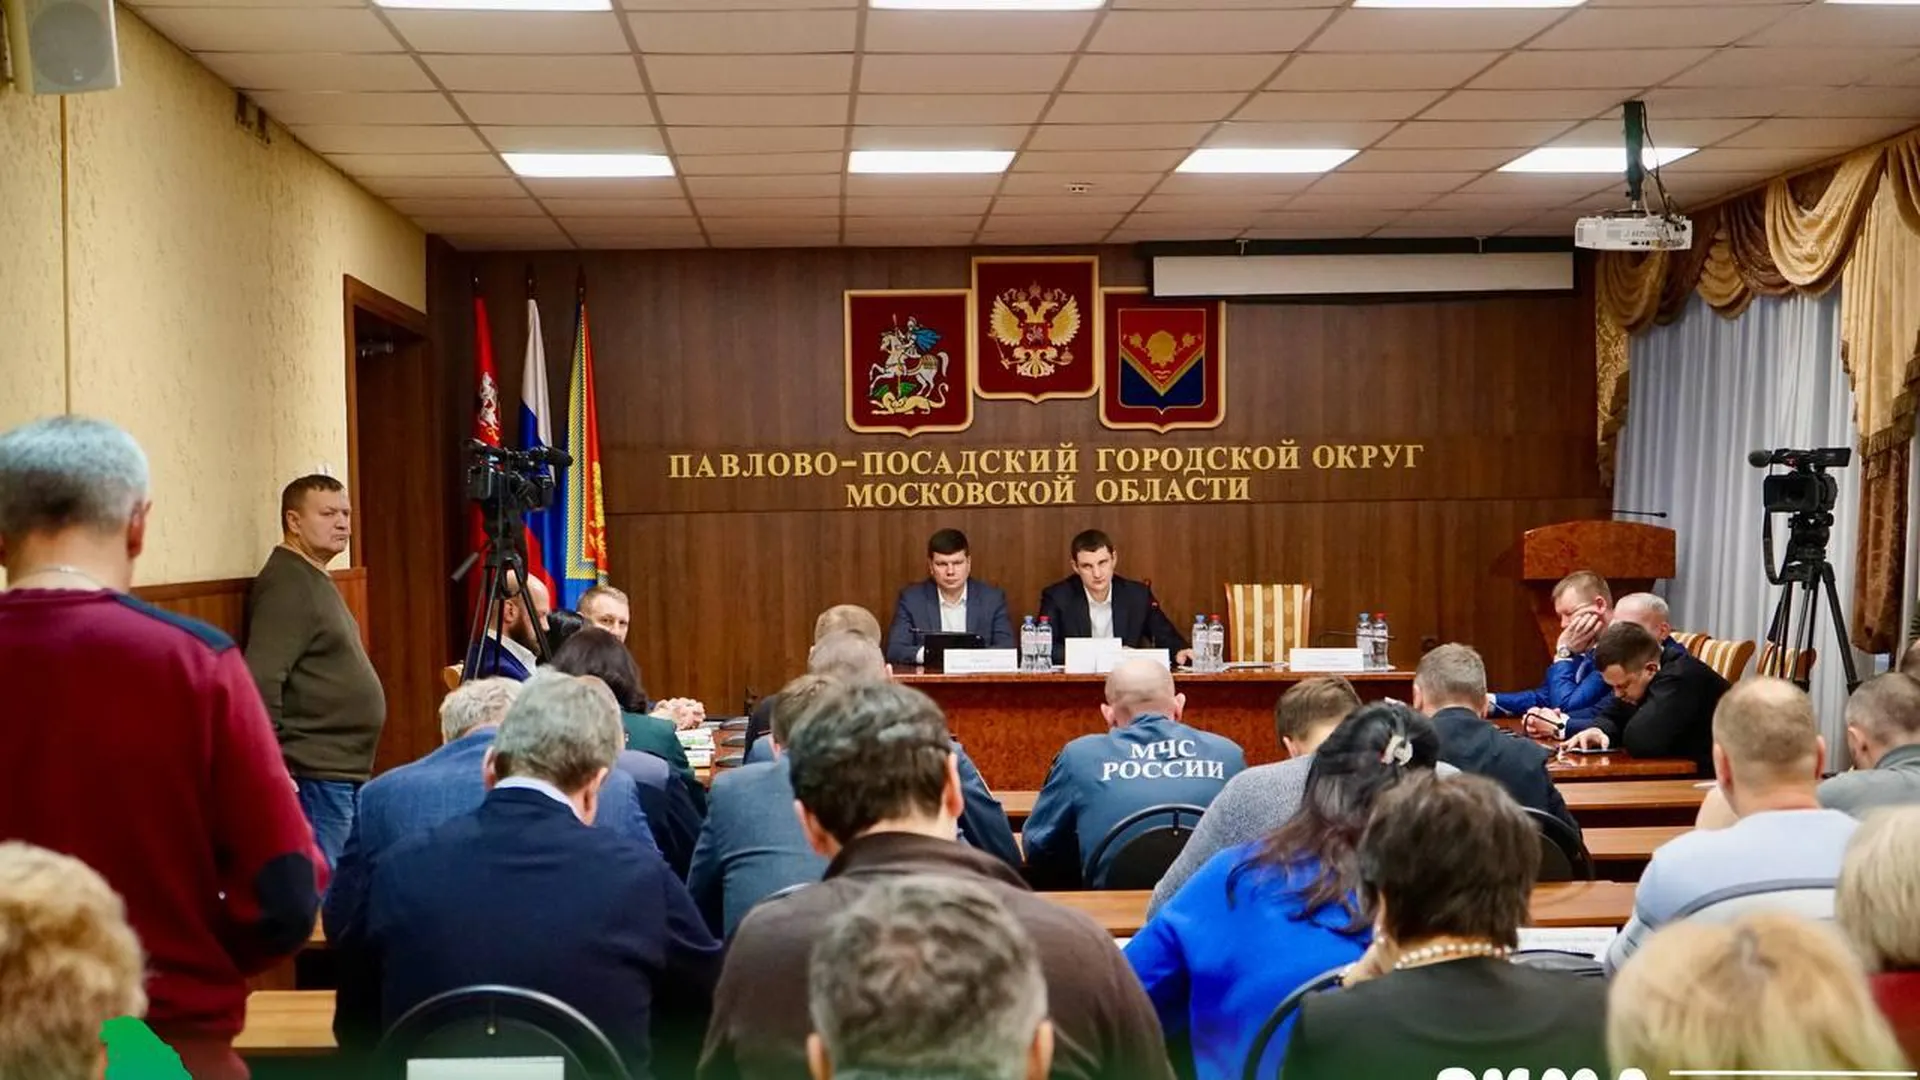 Денис Семенов призвал службы Павлово-Посадского городского округа исправить недочеты в работе